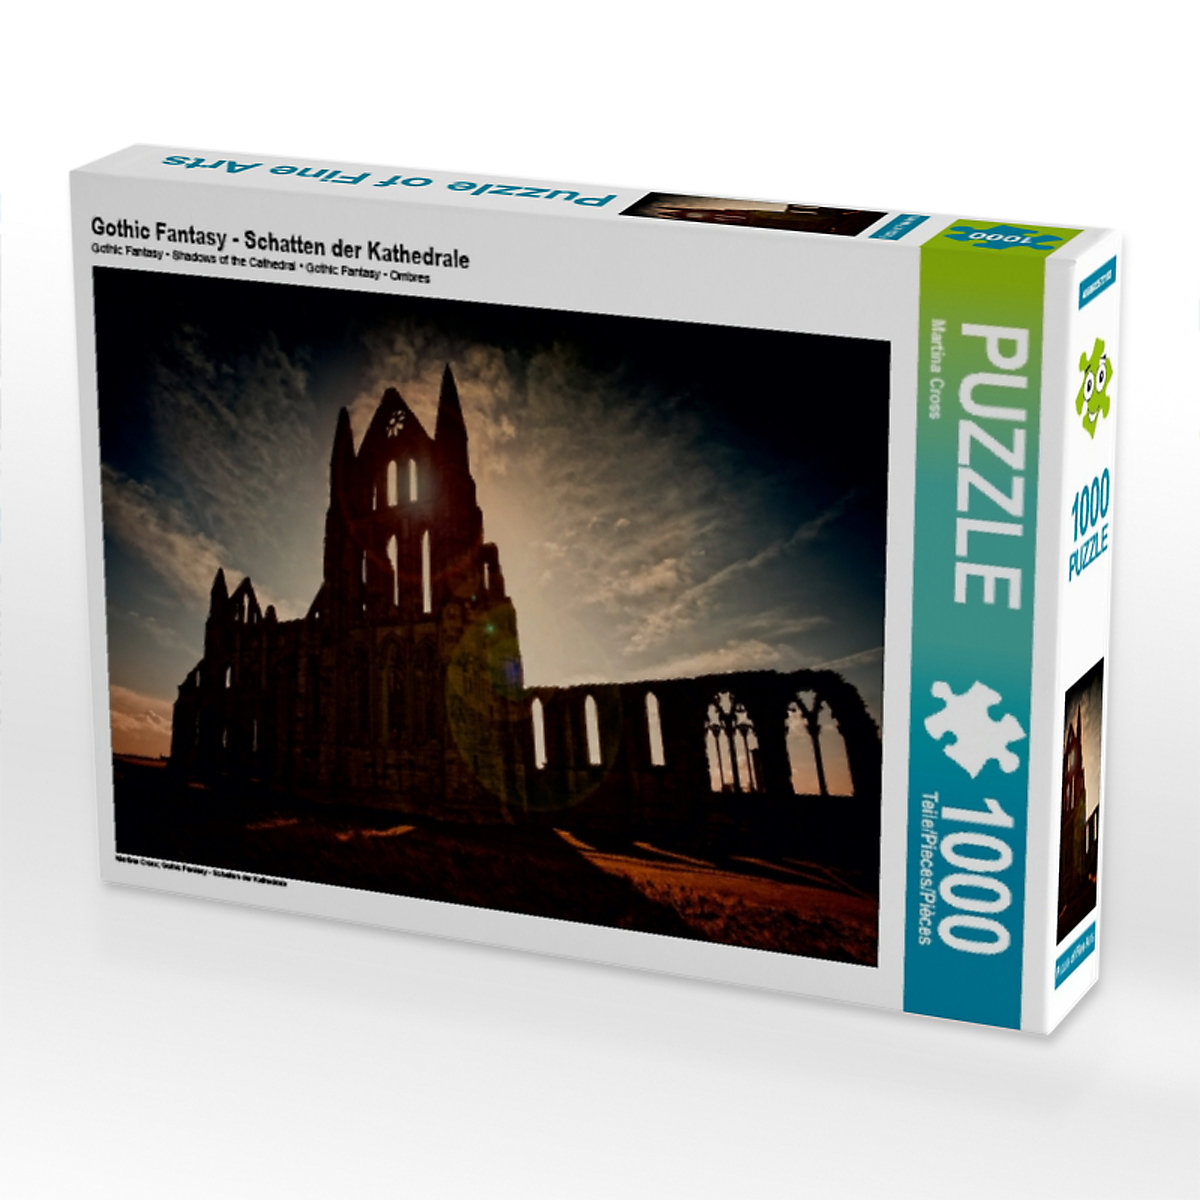 CALVENDO® Puzzle CALVENDO Puzzle Gothic Fantasy Schatten der Kathedrale 1000 Teile Foto-Puzzle für glückliche Stunden